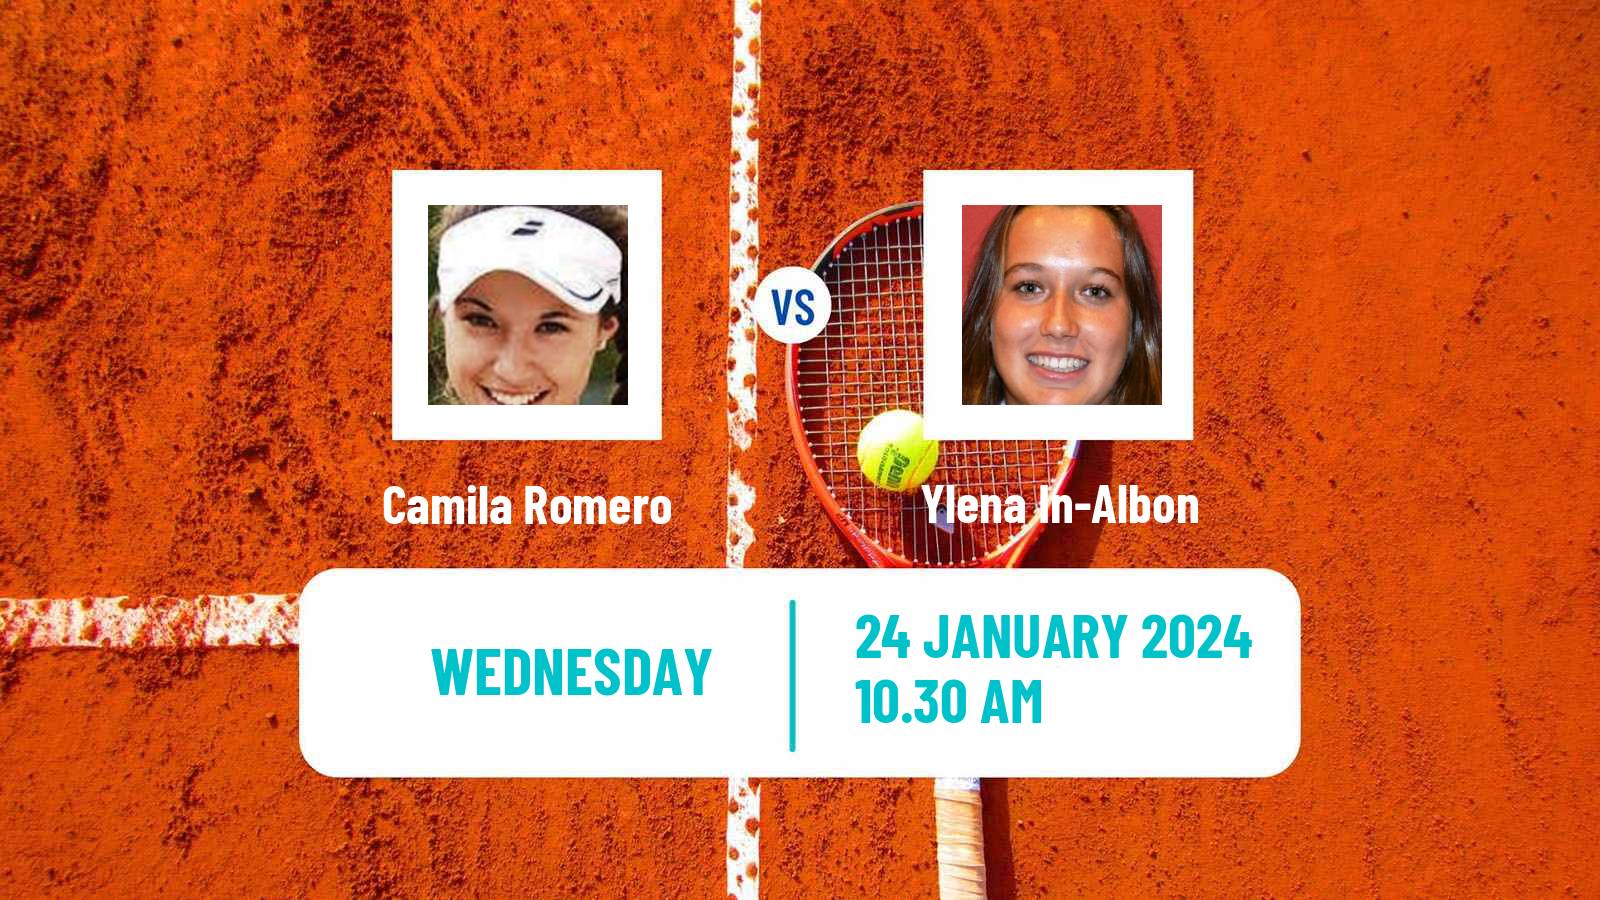 Tennis ITF W35 Buenos Aires 2 Women Camila Romero - Ylena In-Albon